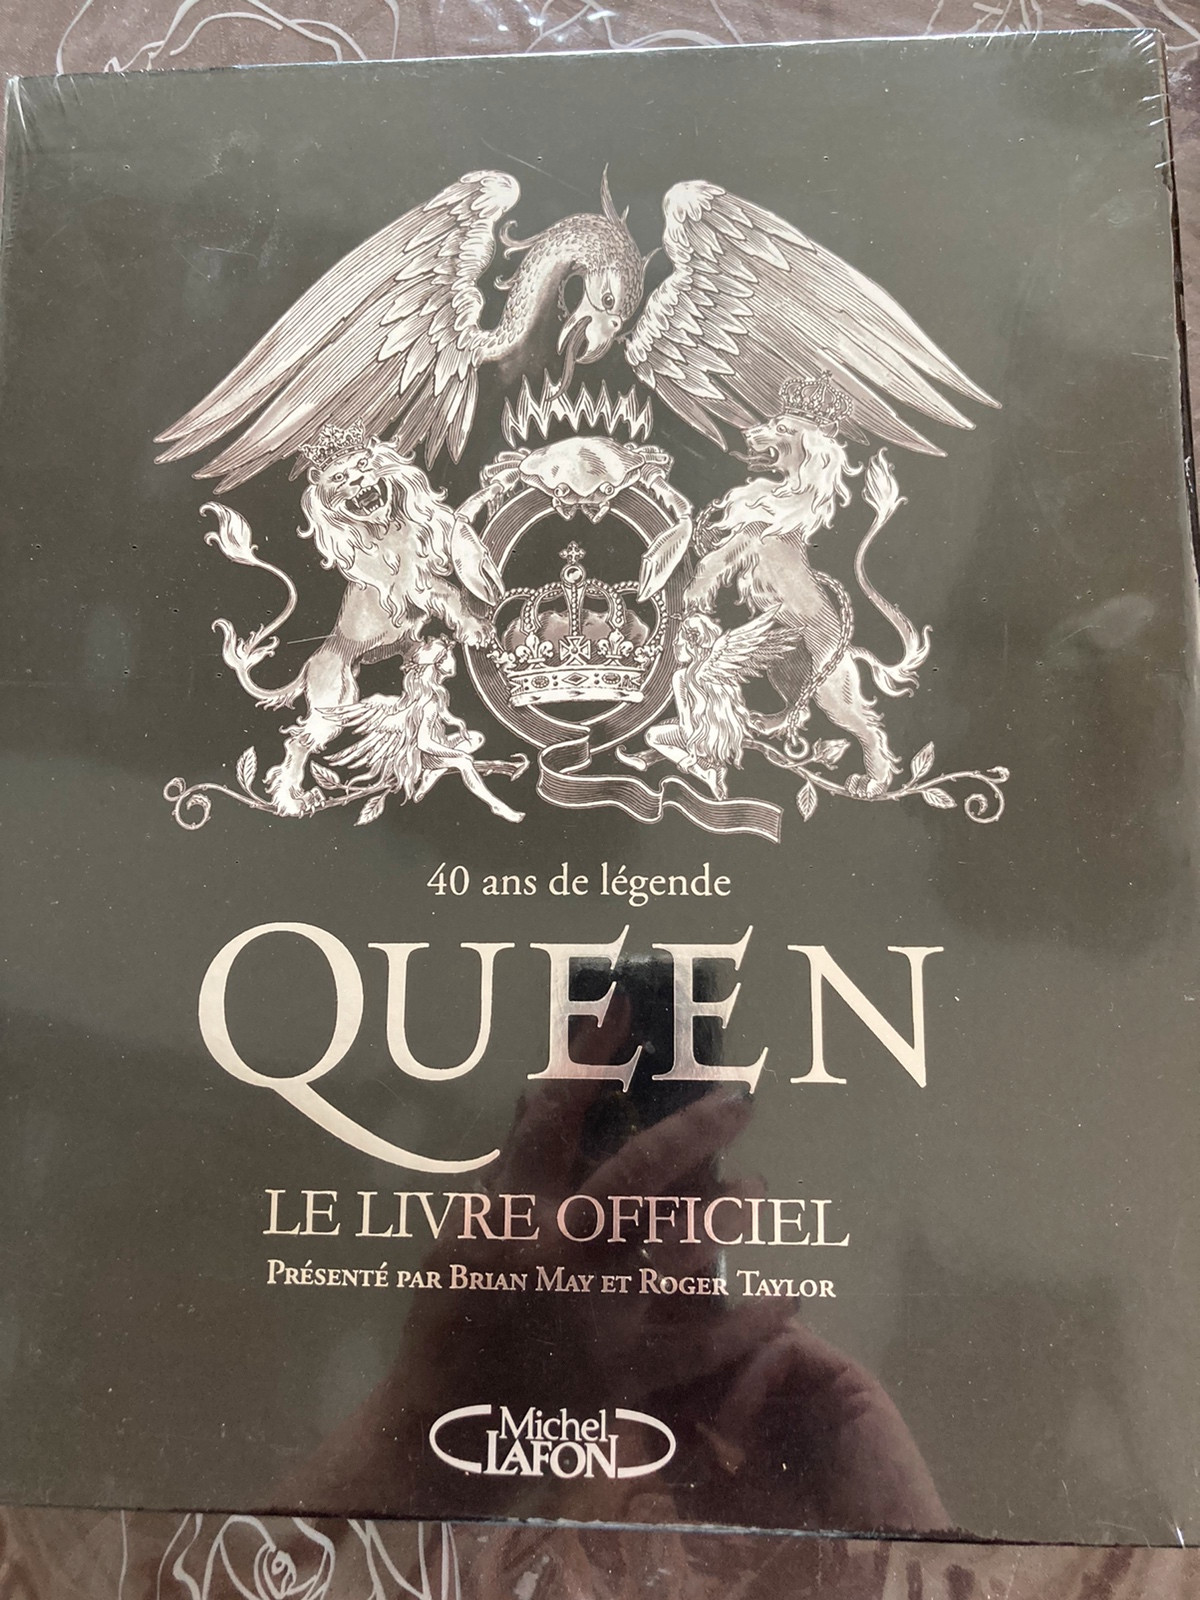 40 ans de légende-Queen-Le livre officiel-Michel Lafon.